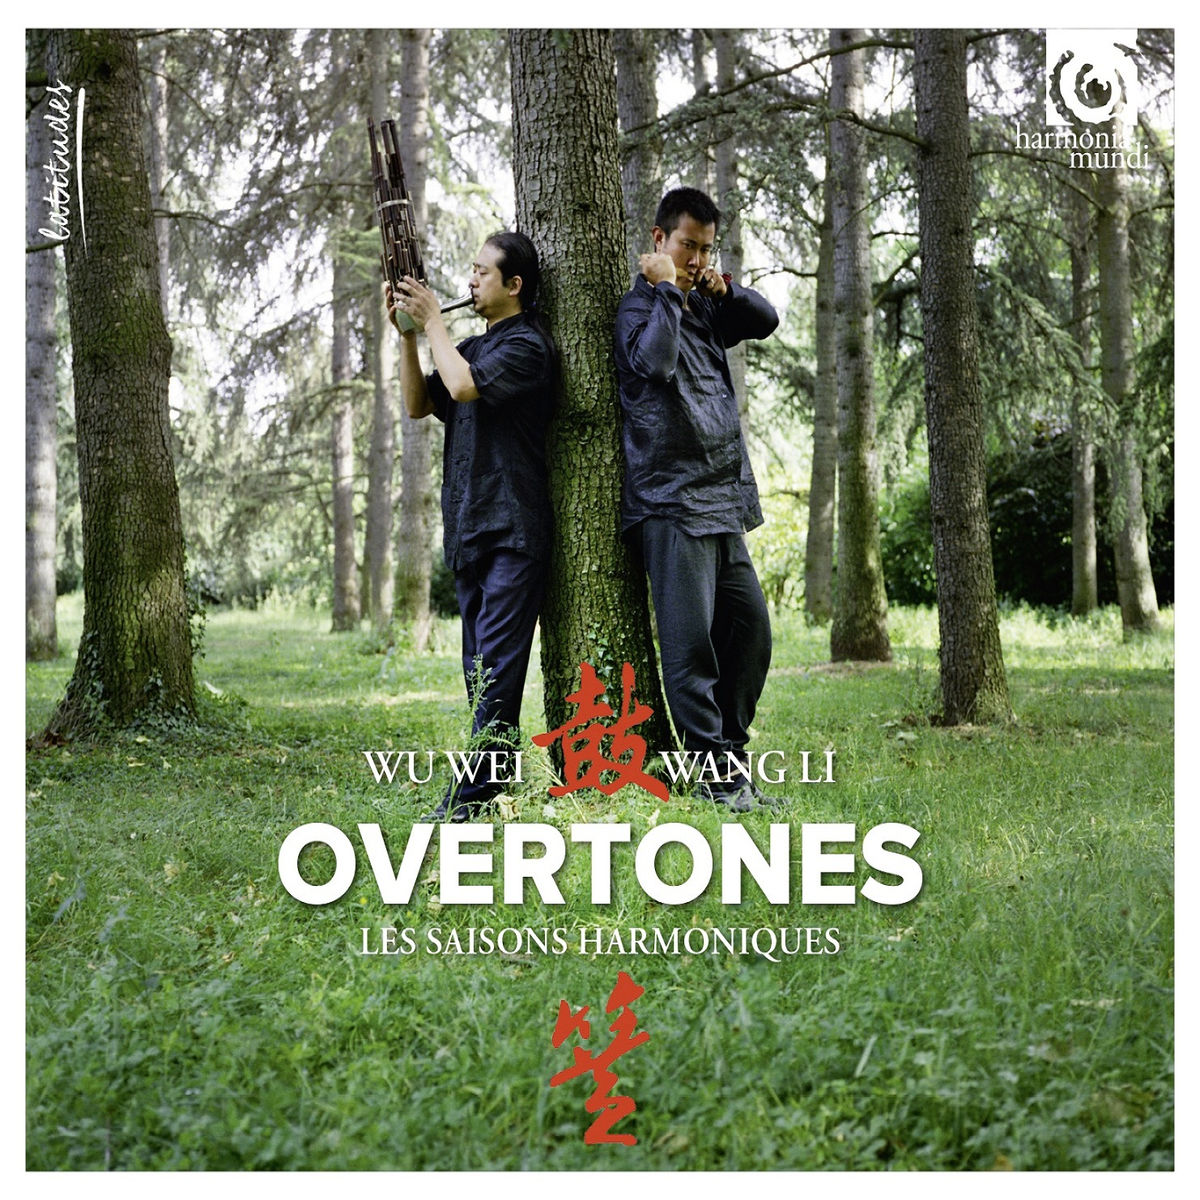 Wang Li & Wu Wei – Overtones “Les Harmoniques Du Ciel” (2016) [Qobuz FLAC 24bit/96kHz]